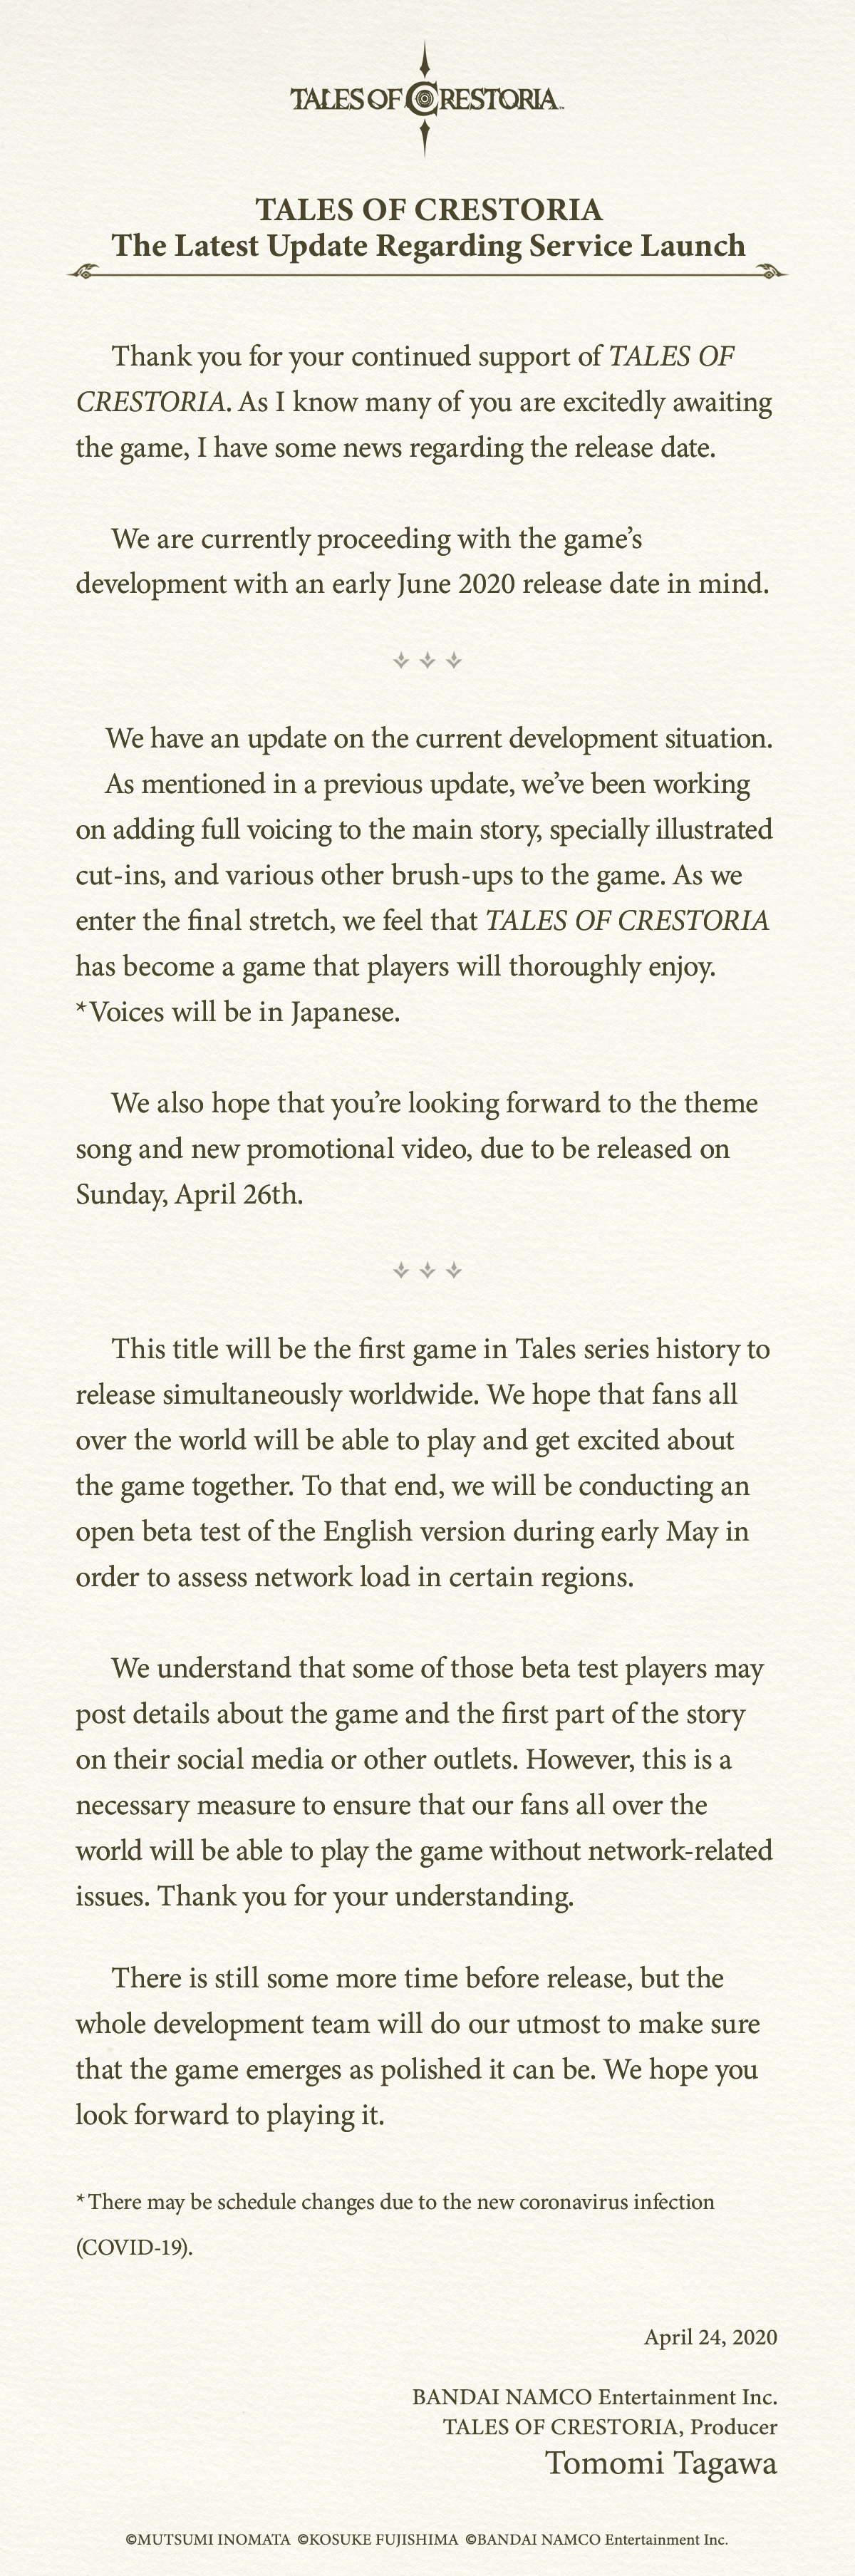 万代传说系列IP手游《Tales of Crestoria》今年6月上线，来感受下日本手游现在的制作水平吧